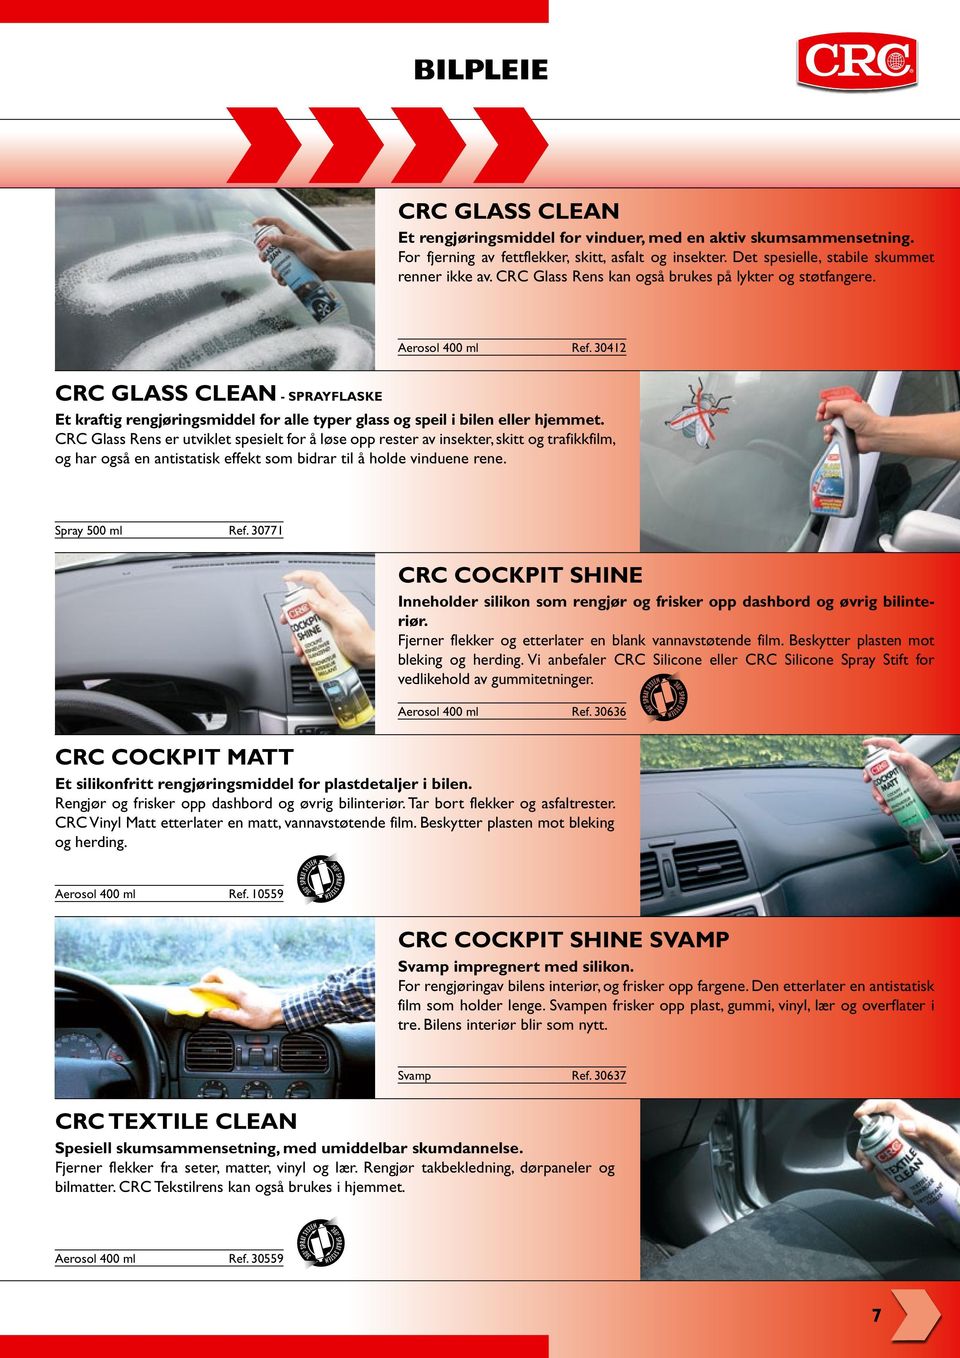 CRC Glass Rens er utviklet spesielt for å løse opp rester av insekter, skitt og trafikkfilm, og har også en antistatisk effekt som bidrar til å holde vinduene rene. Spray 500 ml Ref.